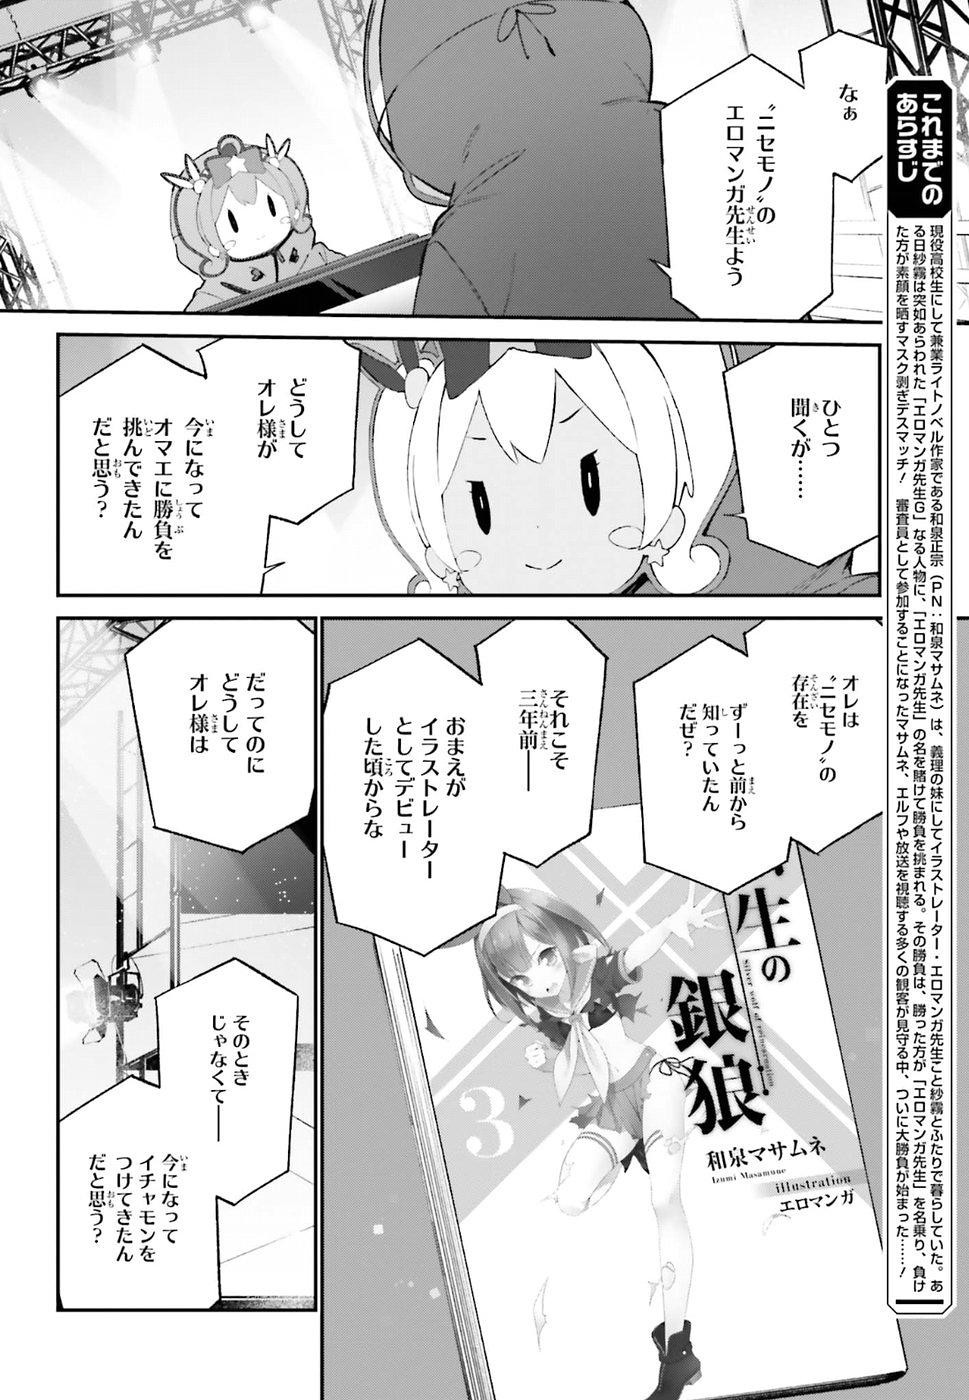 Ero Manga Sensei - Chapter 44 - Page 4